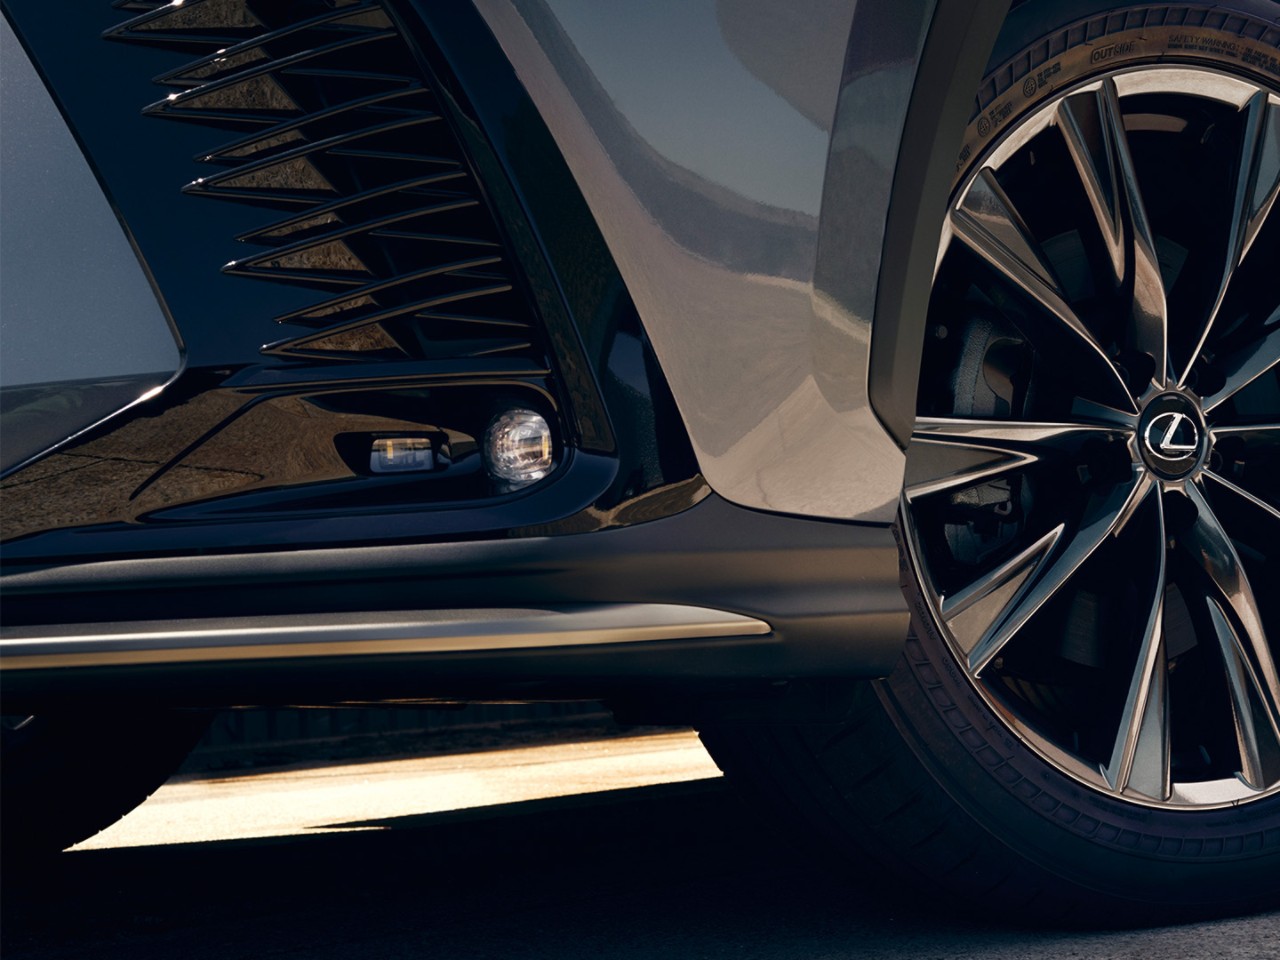 A close-up of a Lexus